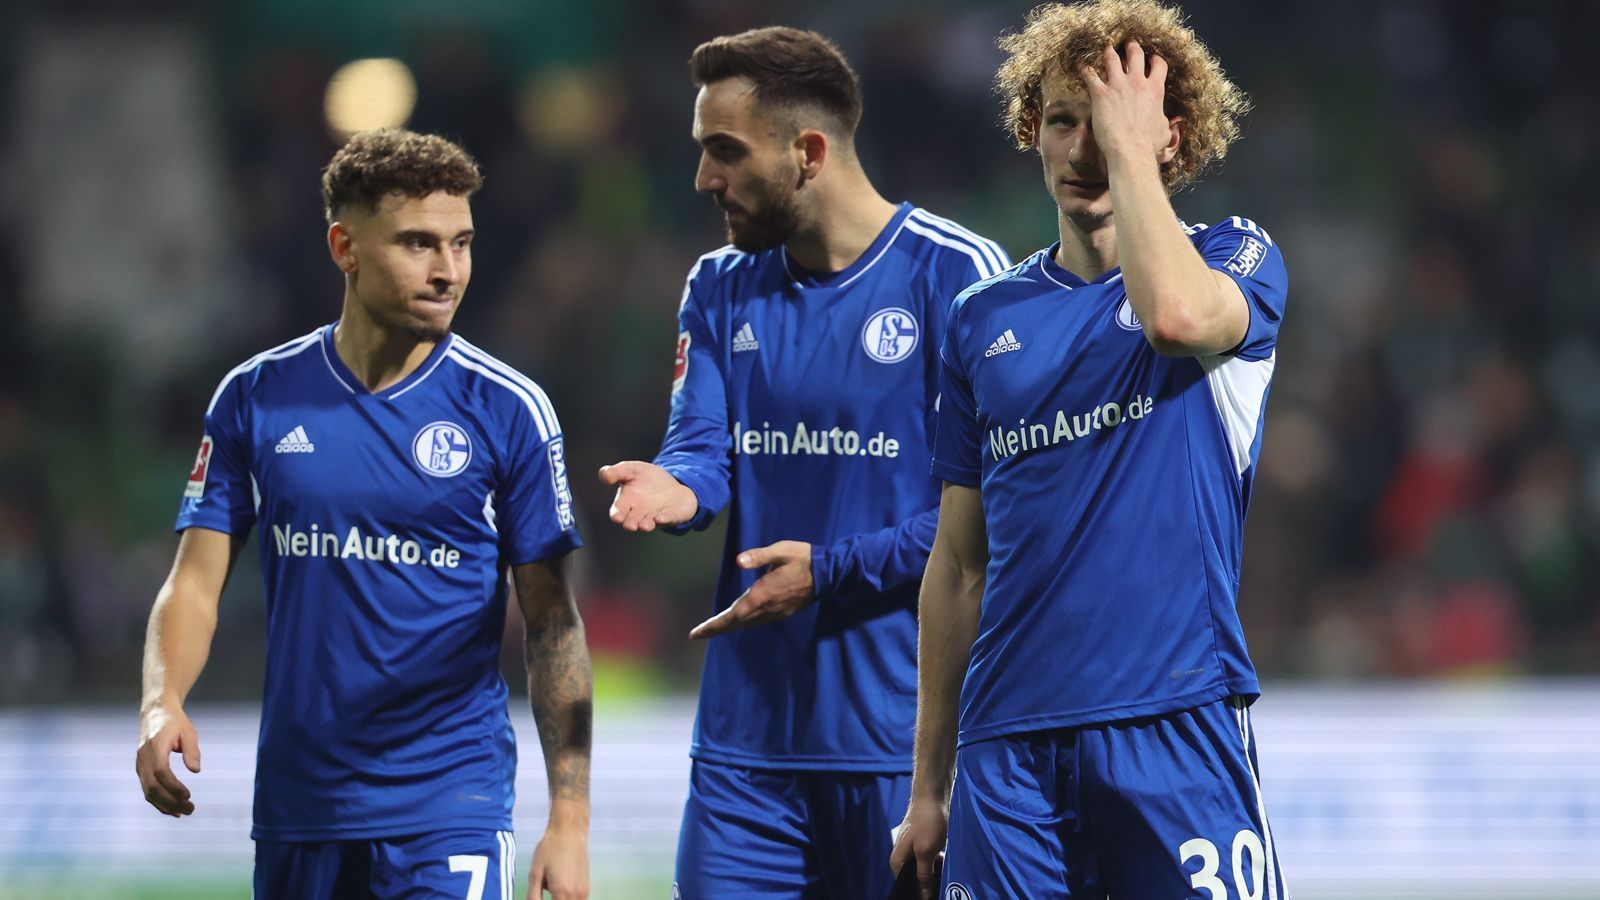 
                <strong>13. Spieltag: FC Schalke 04 egalisiert Auswärts-Negativrekord</strong><br>
                Bitterer Rekord für Königsblau: Mit der unglücklichen 1:2-Niederlage bei Werder Bremen hat der FC Schalke 04 den Negativ-Rekord der sieglosen Auswärtsspiele in Folge in der Bundesliga egalisiert. Seit nunmehr 35 Partien hat Schalke auswärts nicht mehr gewonnen. So viele Auswärtsspiele am Stück sieglos war bisher nur der Karlsruher SC. Die Schalker haben in der Bundesliga zuletzt am 23. November 2019 ein Auswärtsspiel gewonnen - damals ausgerechnet in Bremen (2:1). Zwischenzeitlich kickten die "Knappen" Allerdings auch eine Saison in der 2. Bundesliga. Beim nächsten Auswärtsspiel am 21. Januar 2023 könnte Schalke einen alleinigen, neuen Rekord aufstellen. Die Sieglos-Serie des KSC erstreckte sich wegen mehrerer Jahre in der 2. Liga sogar über gut fünf Jahre von 1976 bis 1981. 
              